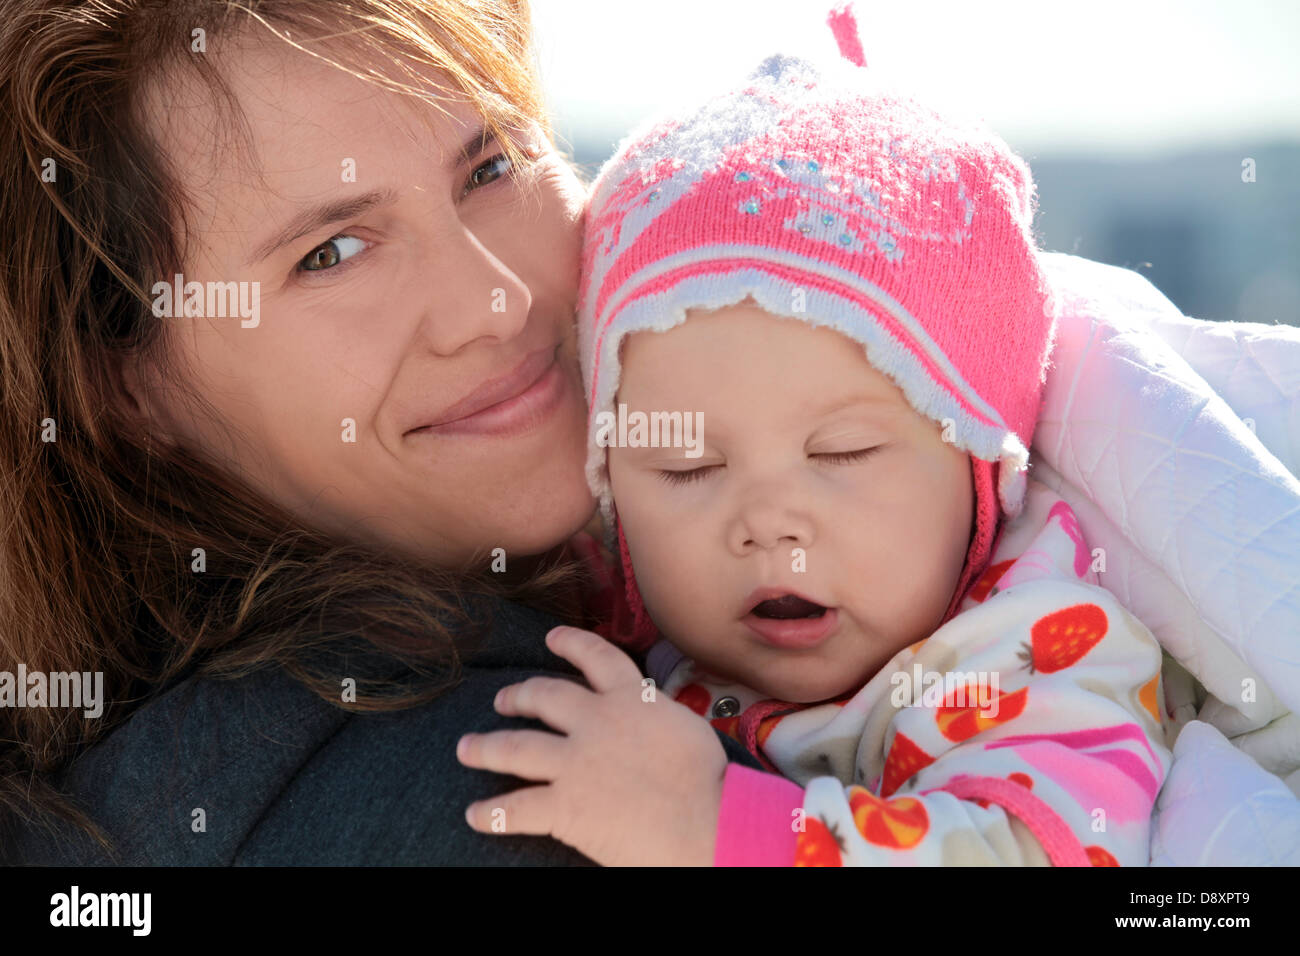 Jeune femme européenne tient sa petite fille endormie dans une couverture. Closeup portrait en extérieur Banque D'Images